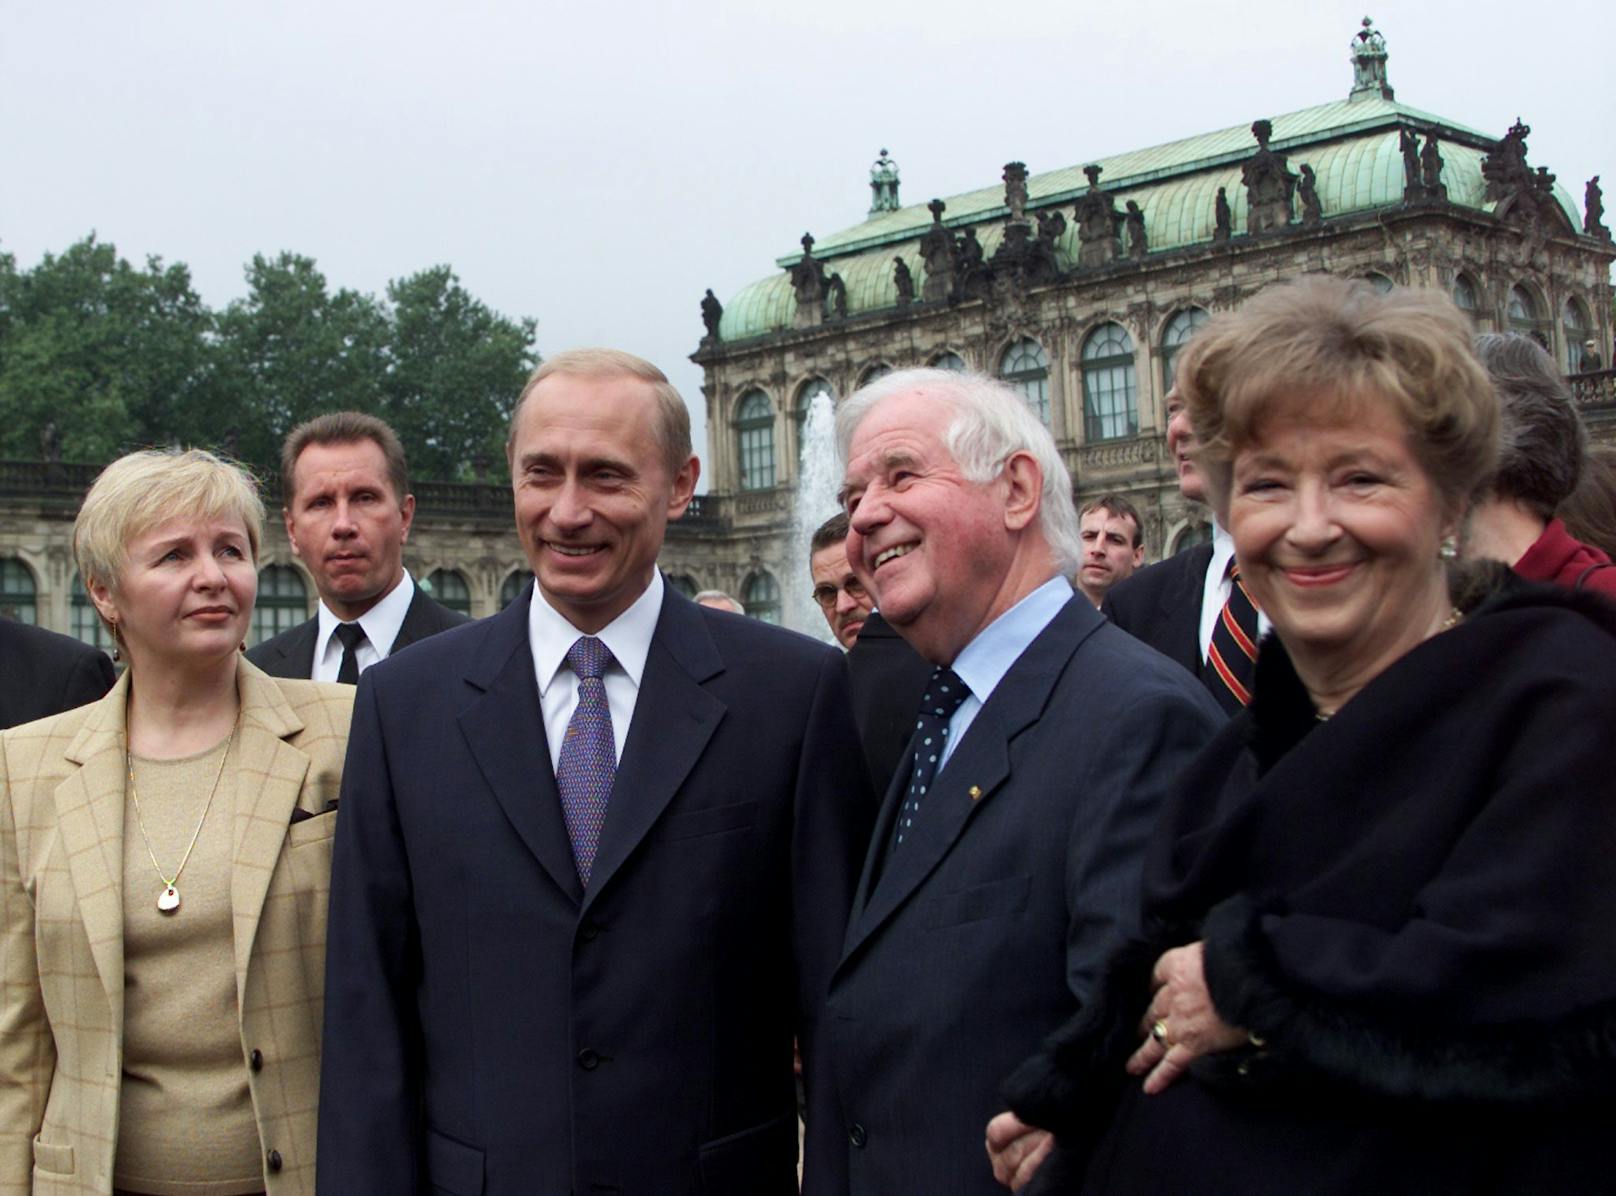 Von 1985 bis 1990 lebte das Paar in Dresden, wo Putin für die DDR tätig war. Hier sind die Putins 2001 bei einer gemeinsamen Stadttour mit dem sächsischen Ministerpräsidenten Kurt Biedendorf zu sehen.